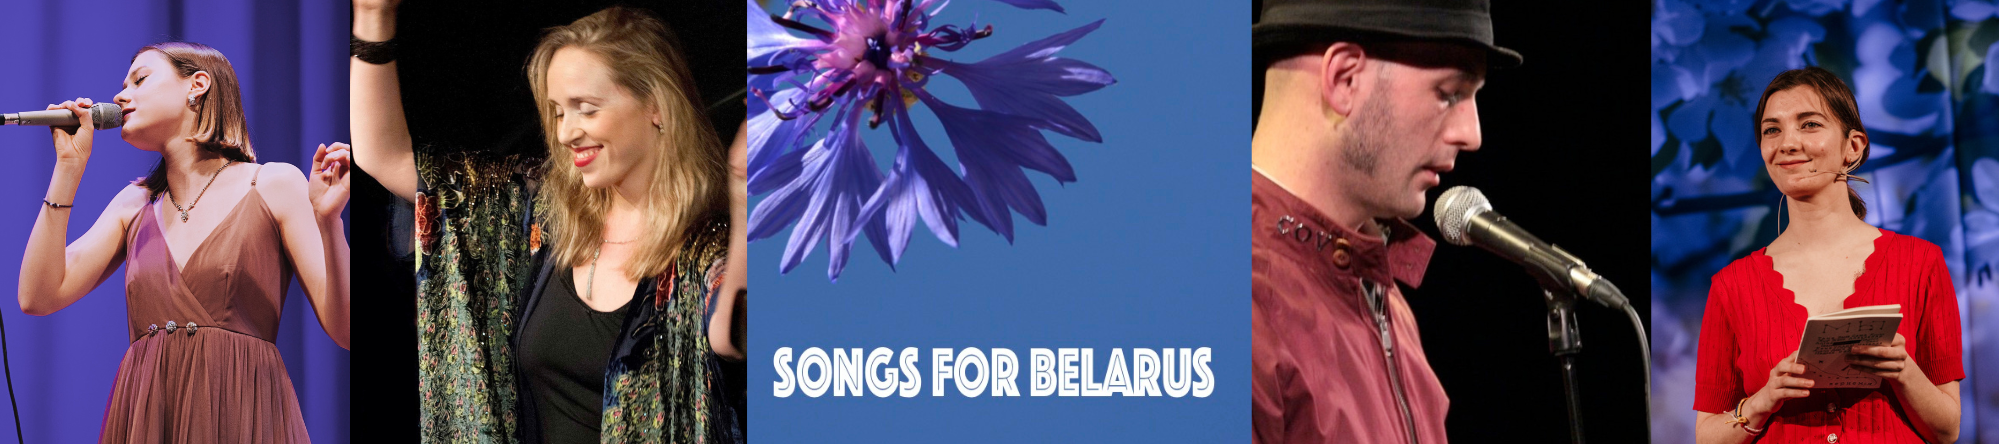 Songs for Belarus logo & performers